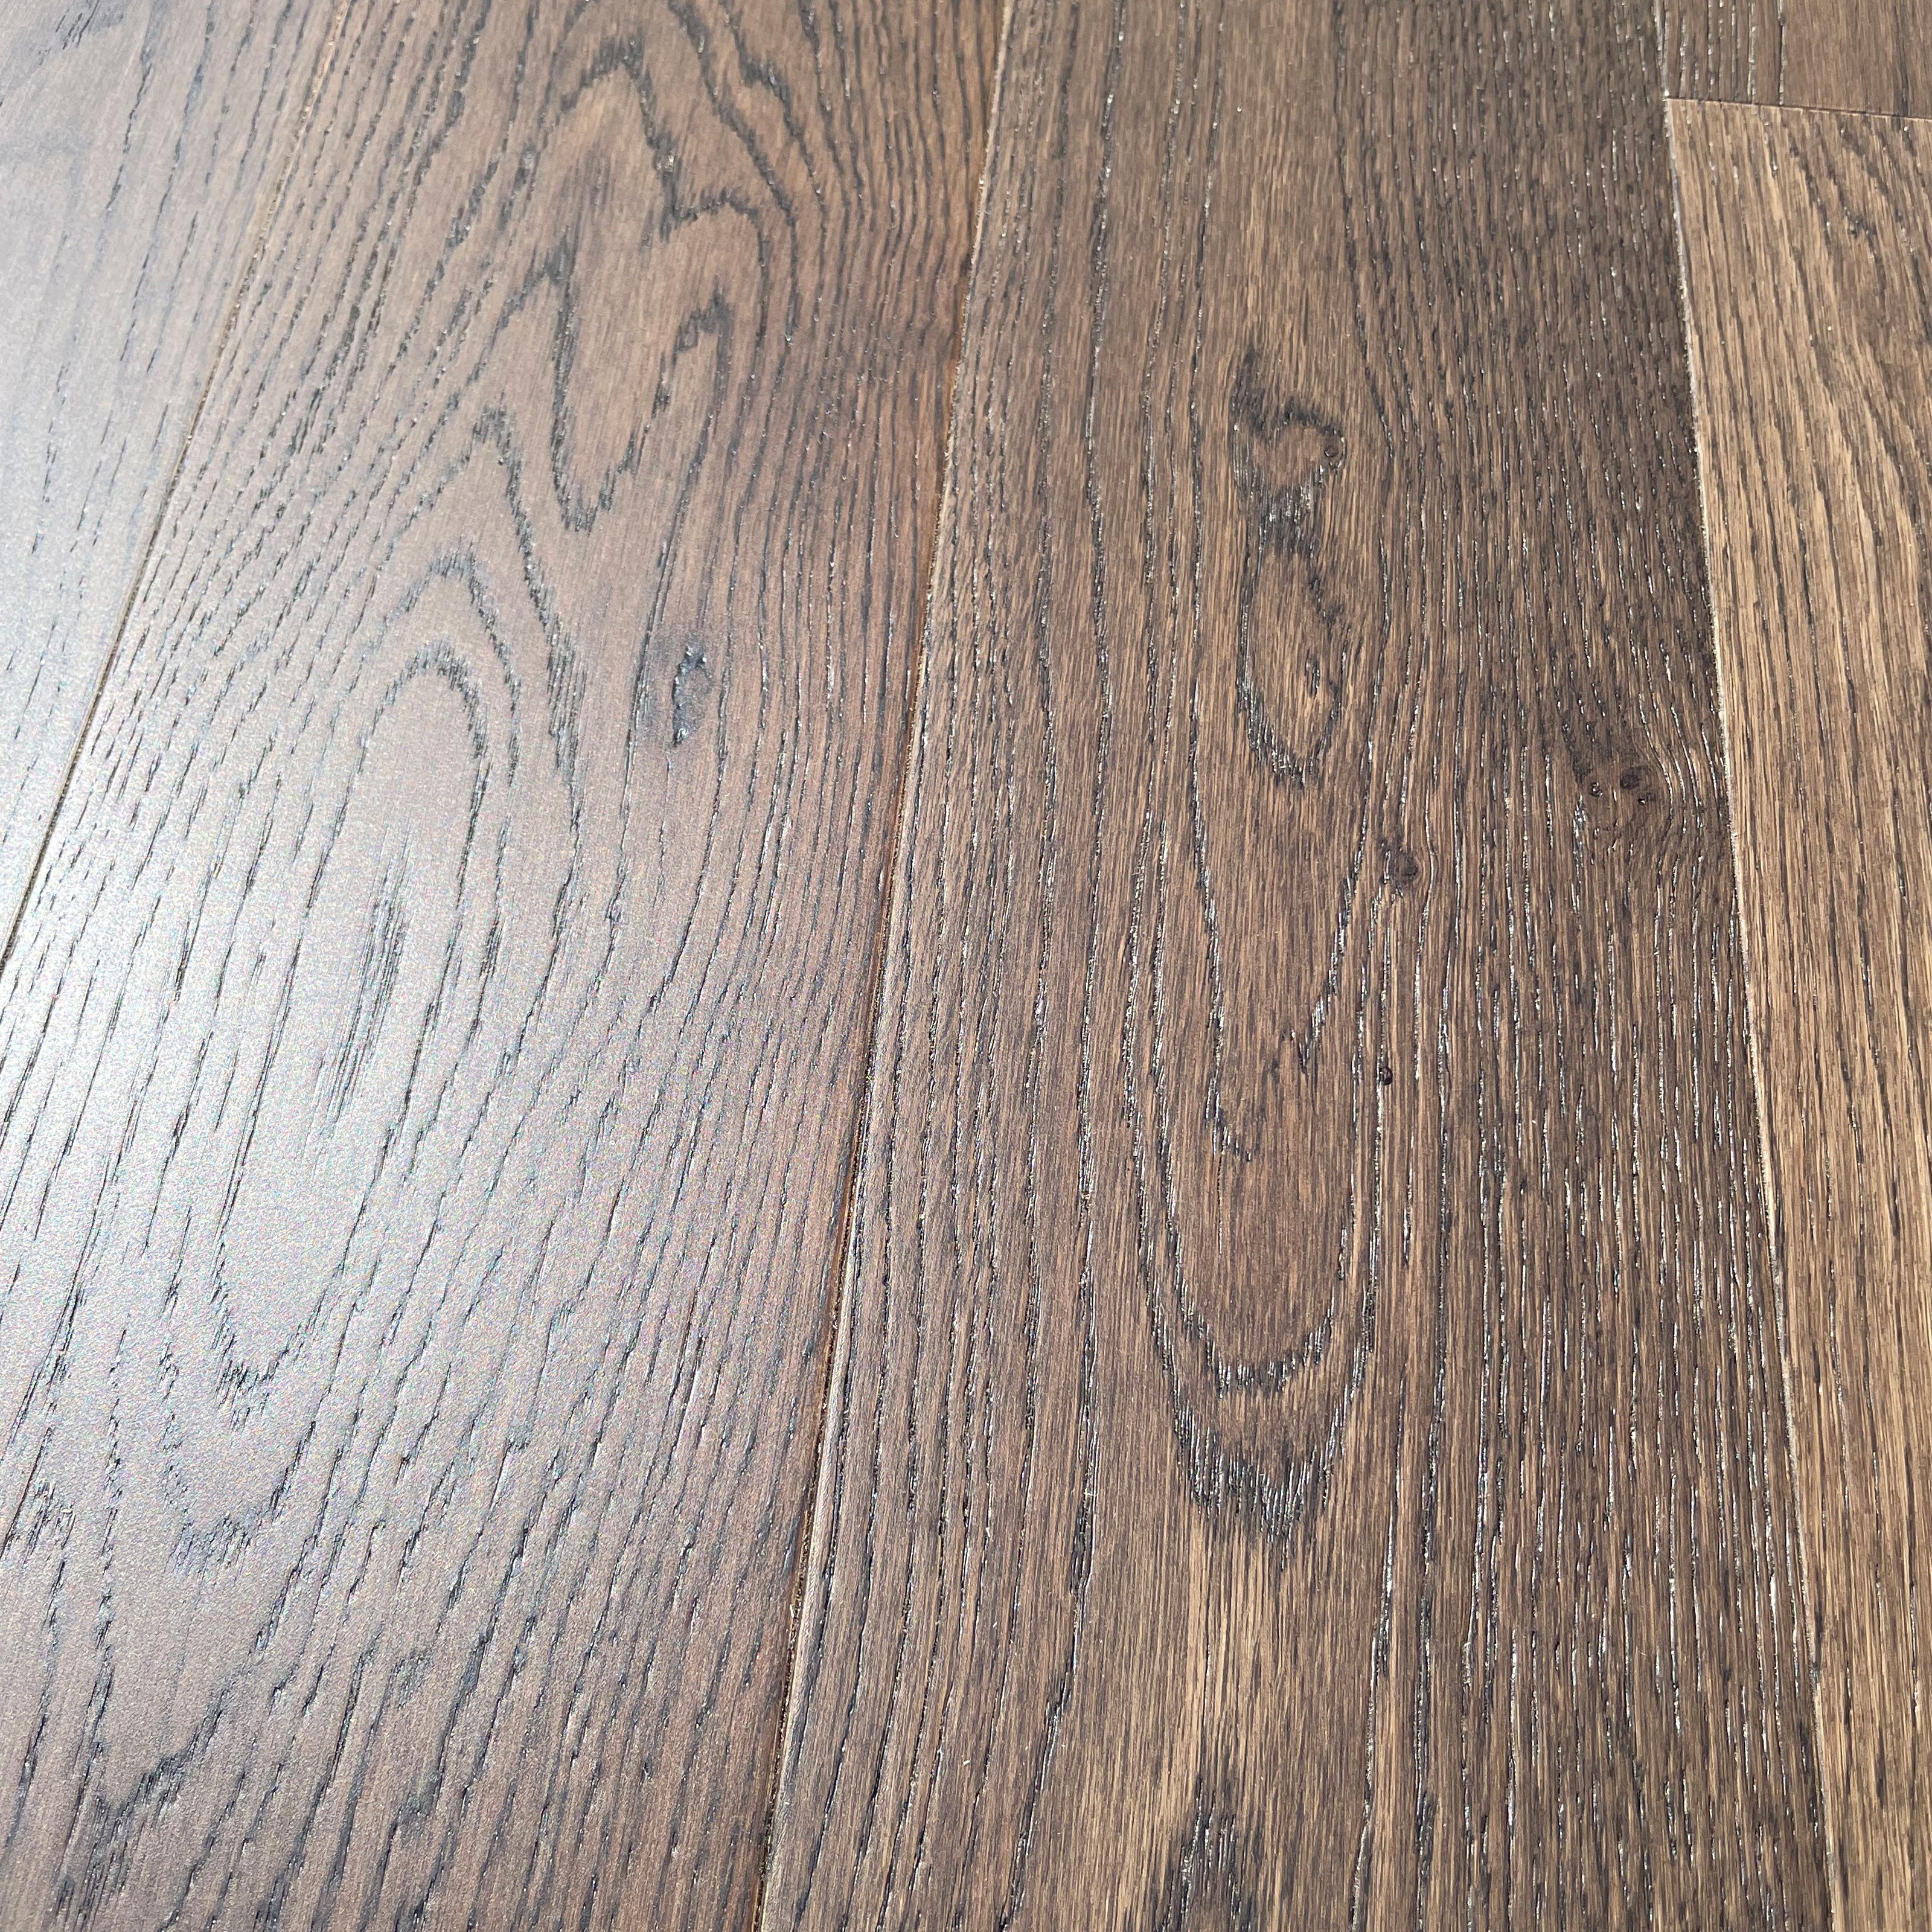 Pavimento in legno di rovere prefinito verniciato spazz. 10x125x900 linea PLANET mod. DARK FOREST - Eternal Parquet